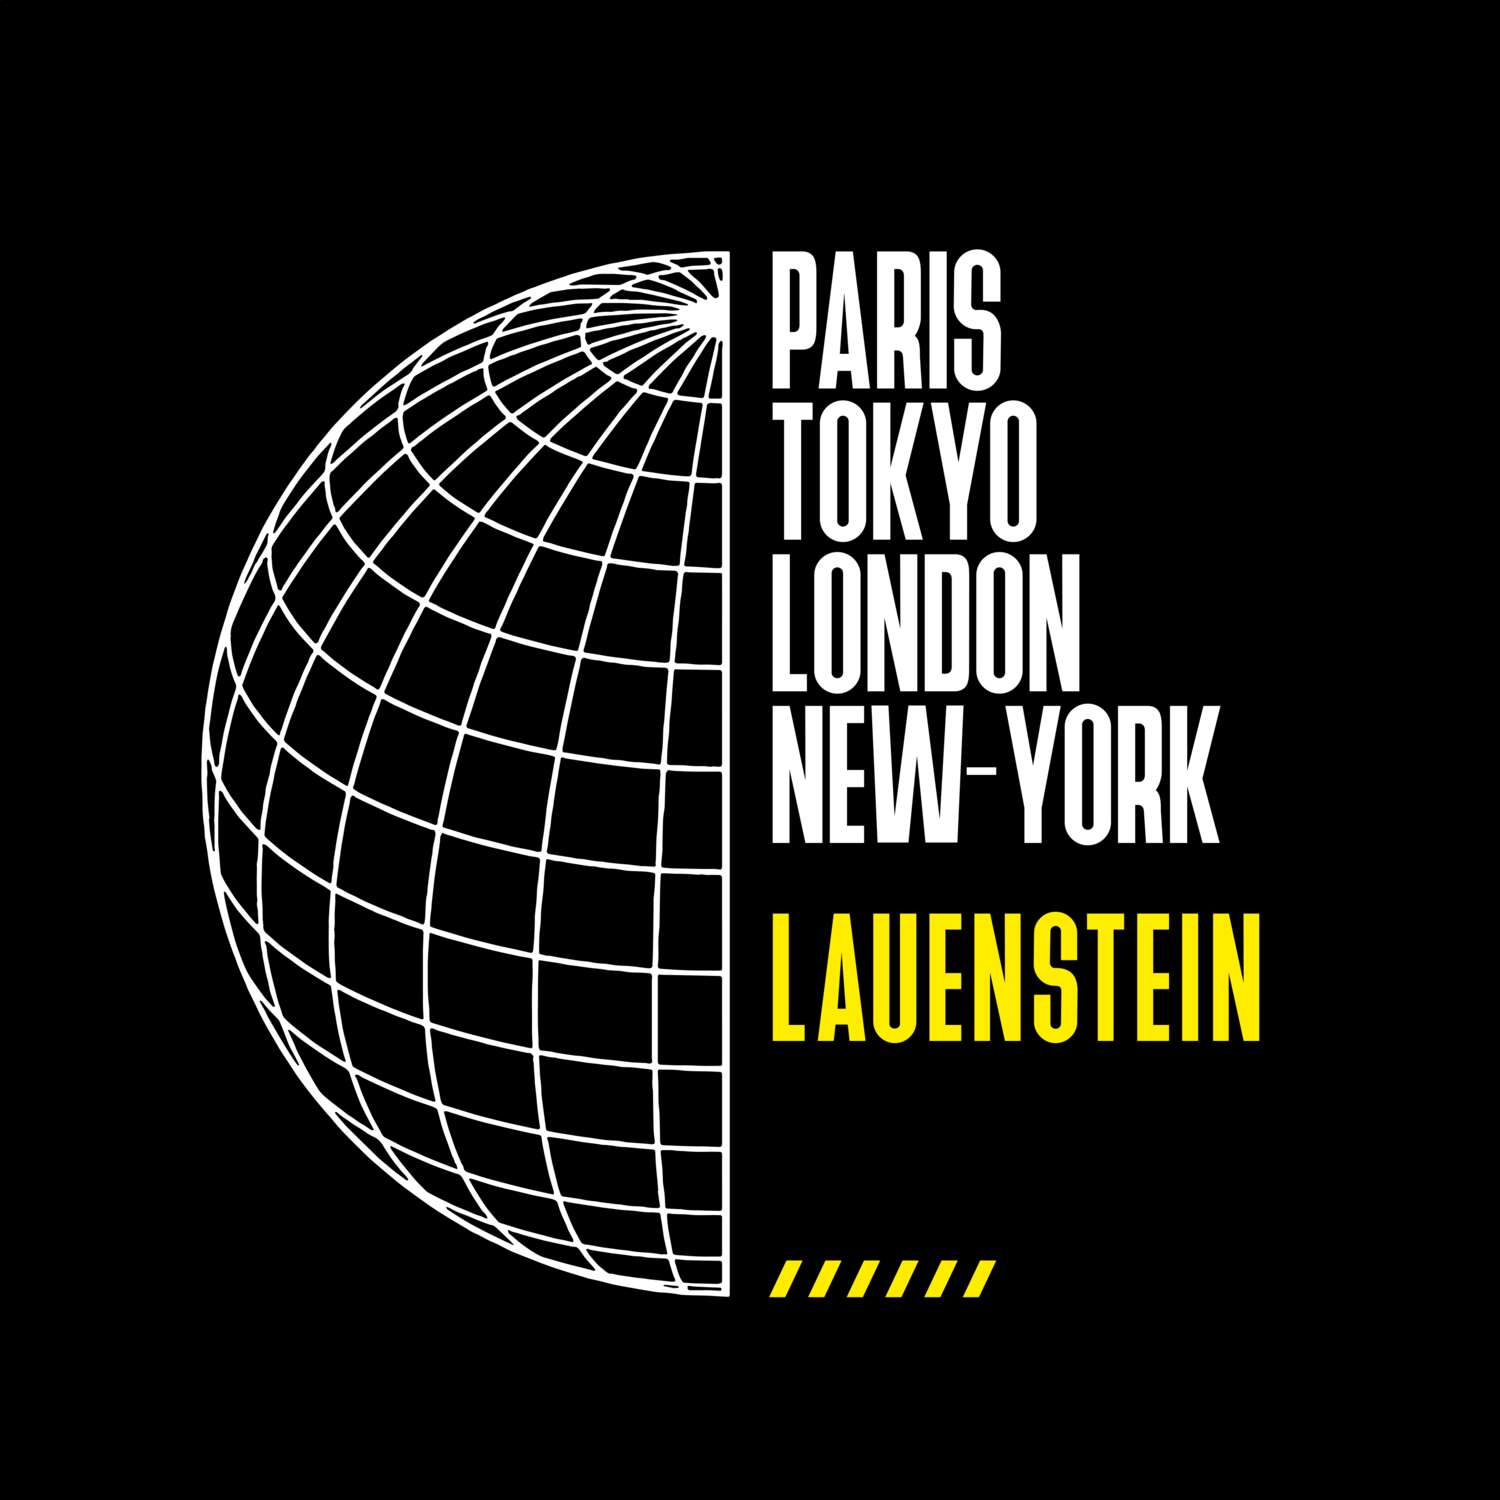 Lauenstein T-Shirt »Paris Tokyo London«